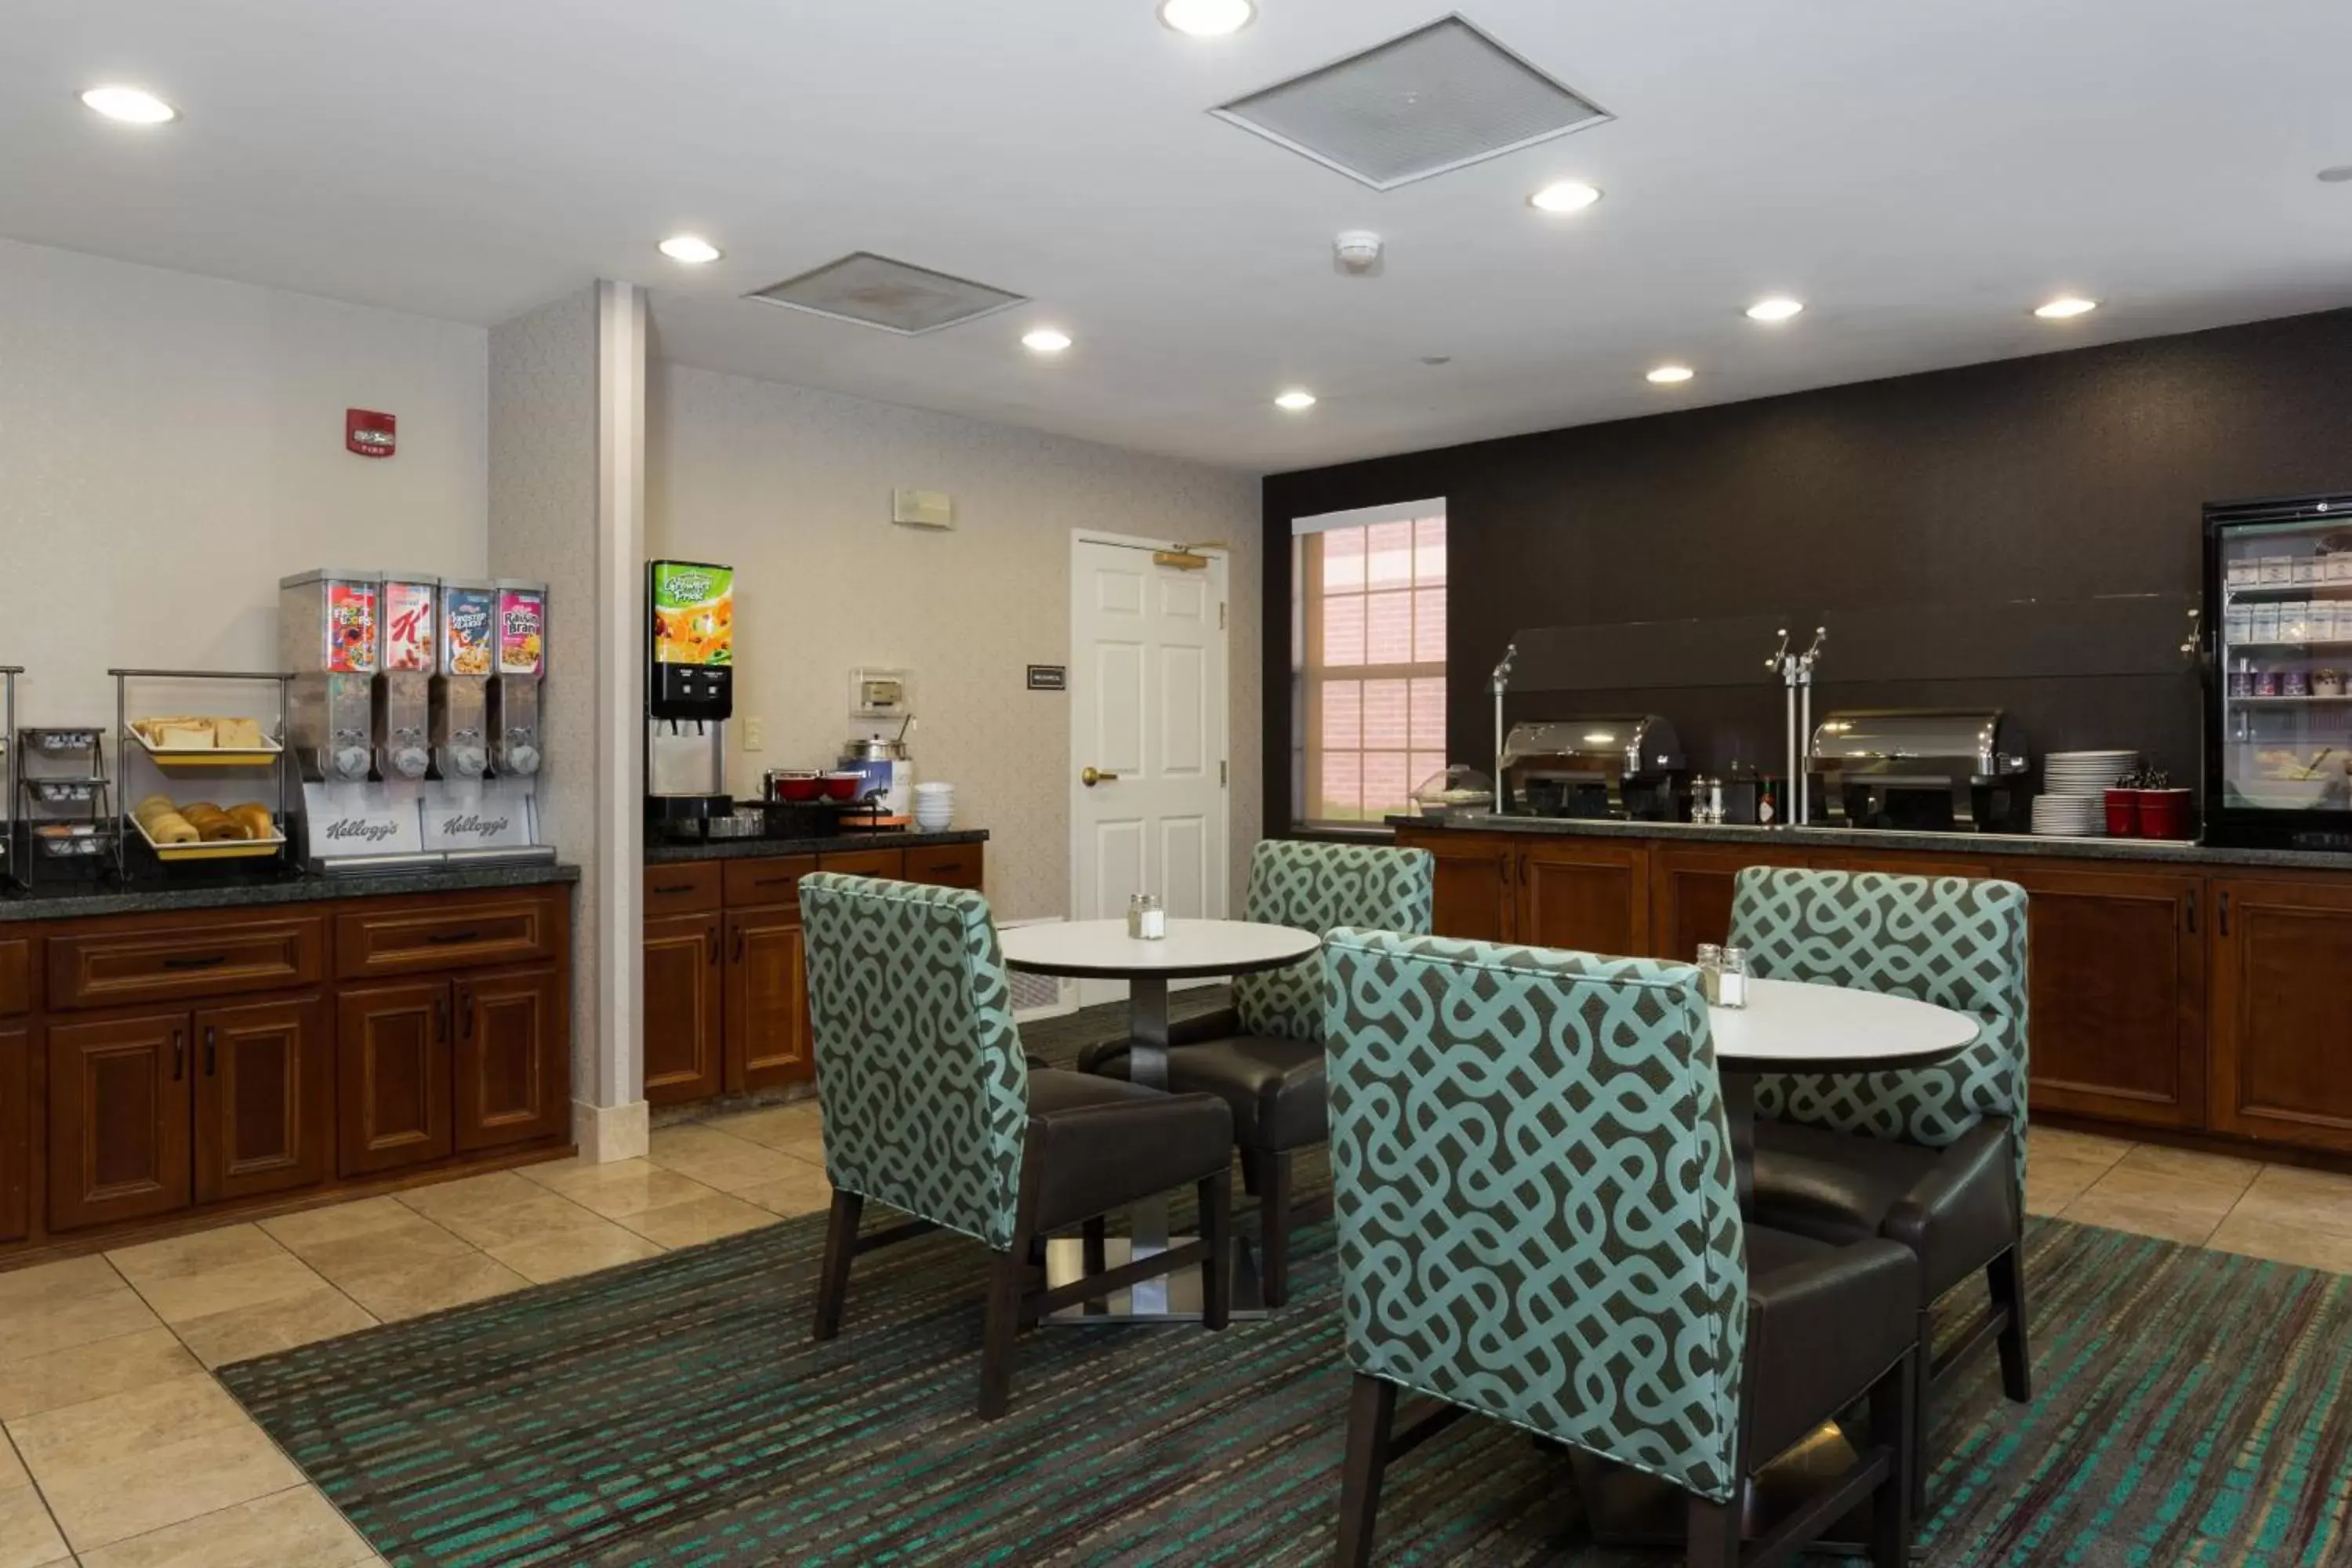 Breakfast, Restaurant/Places to Eat in Residence Inn Kansas City Olathe